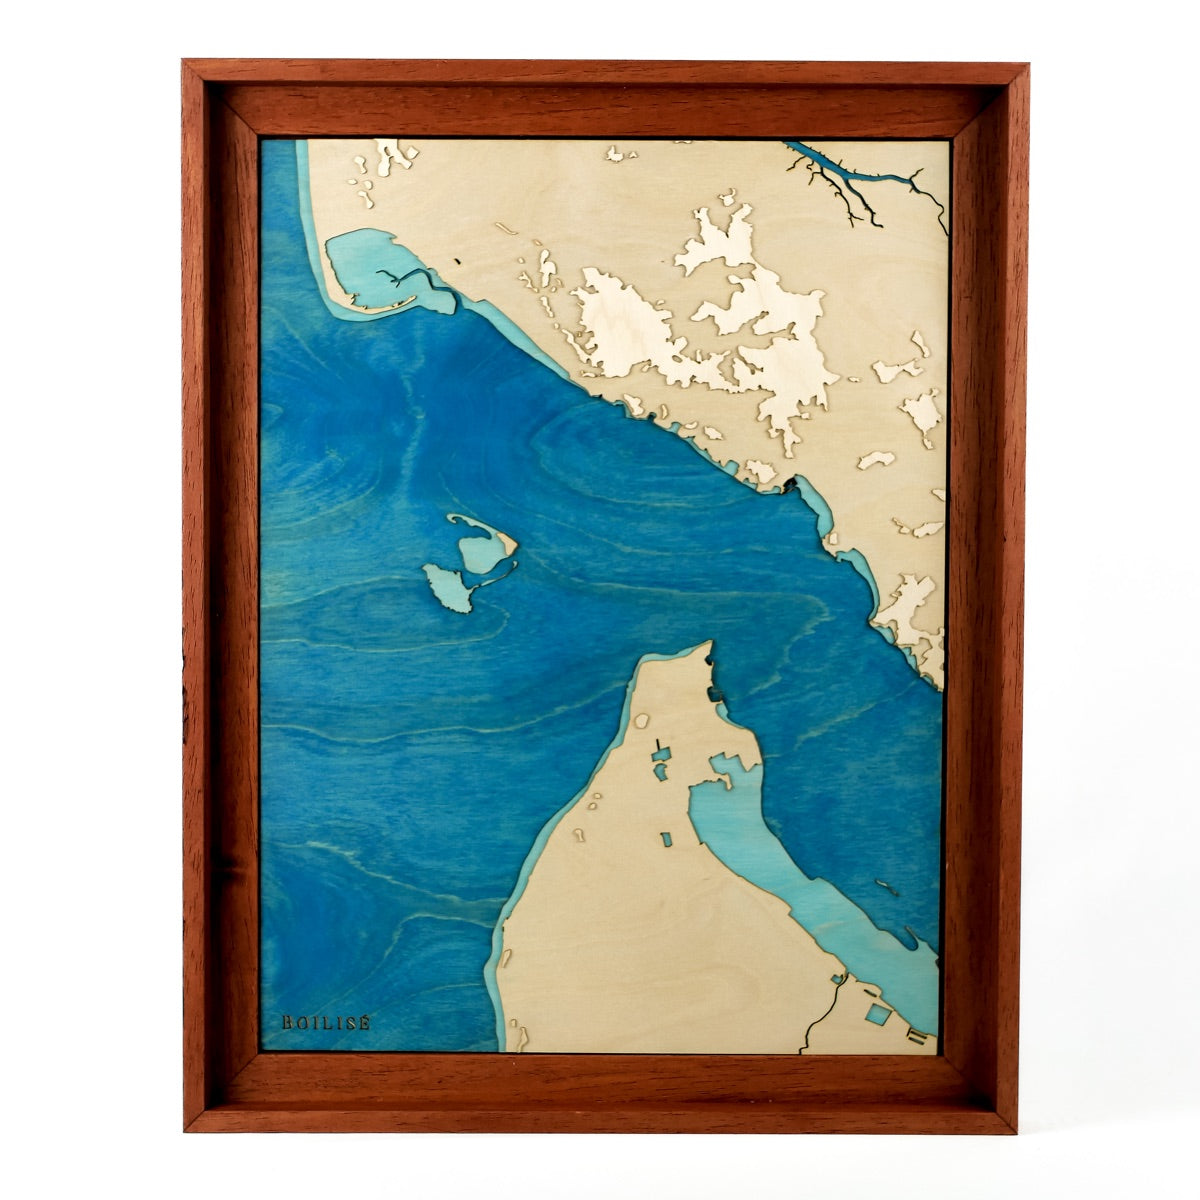 Carte en bois de l'estuaire de la Gironde, caisse américaine brune et océan bleu marine